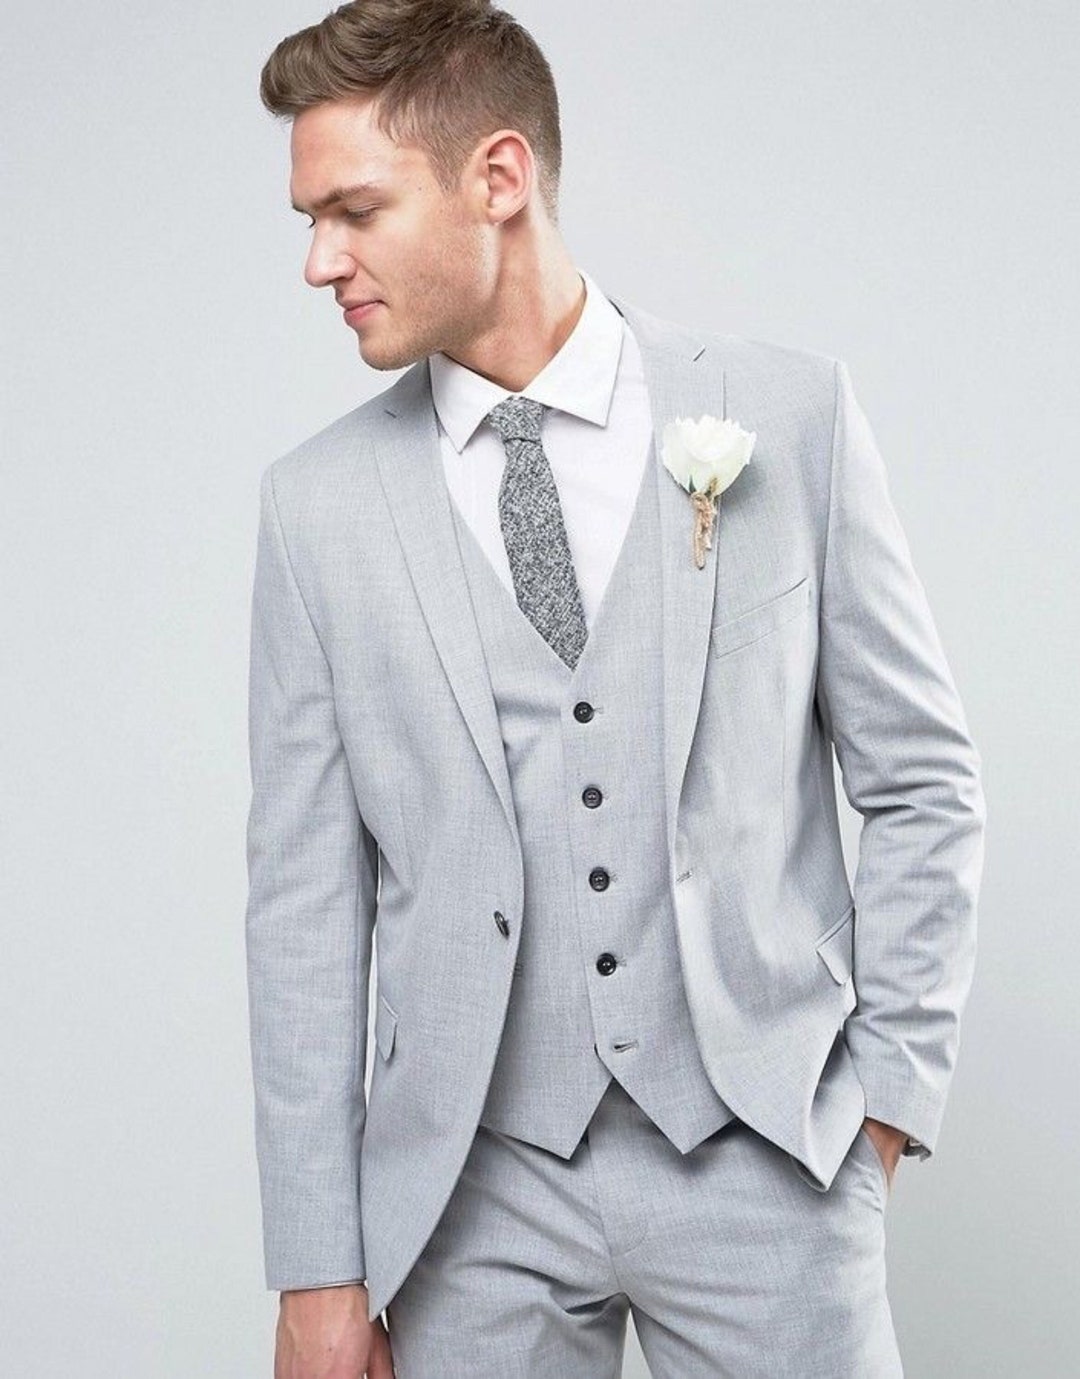 Menista Suit Premium Three Piece Light Grey Mens Suit for Wedding ...